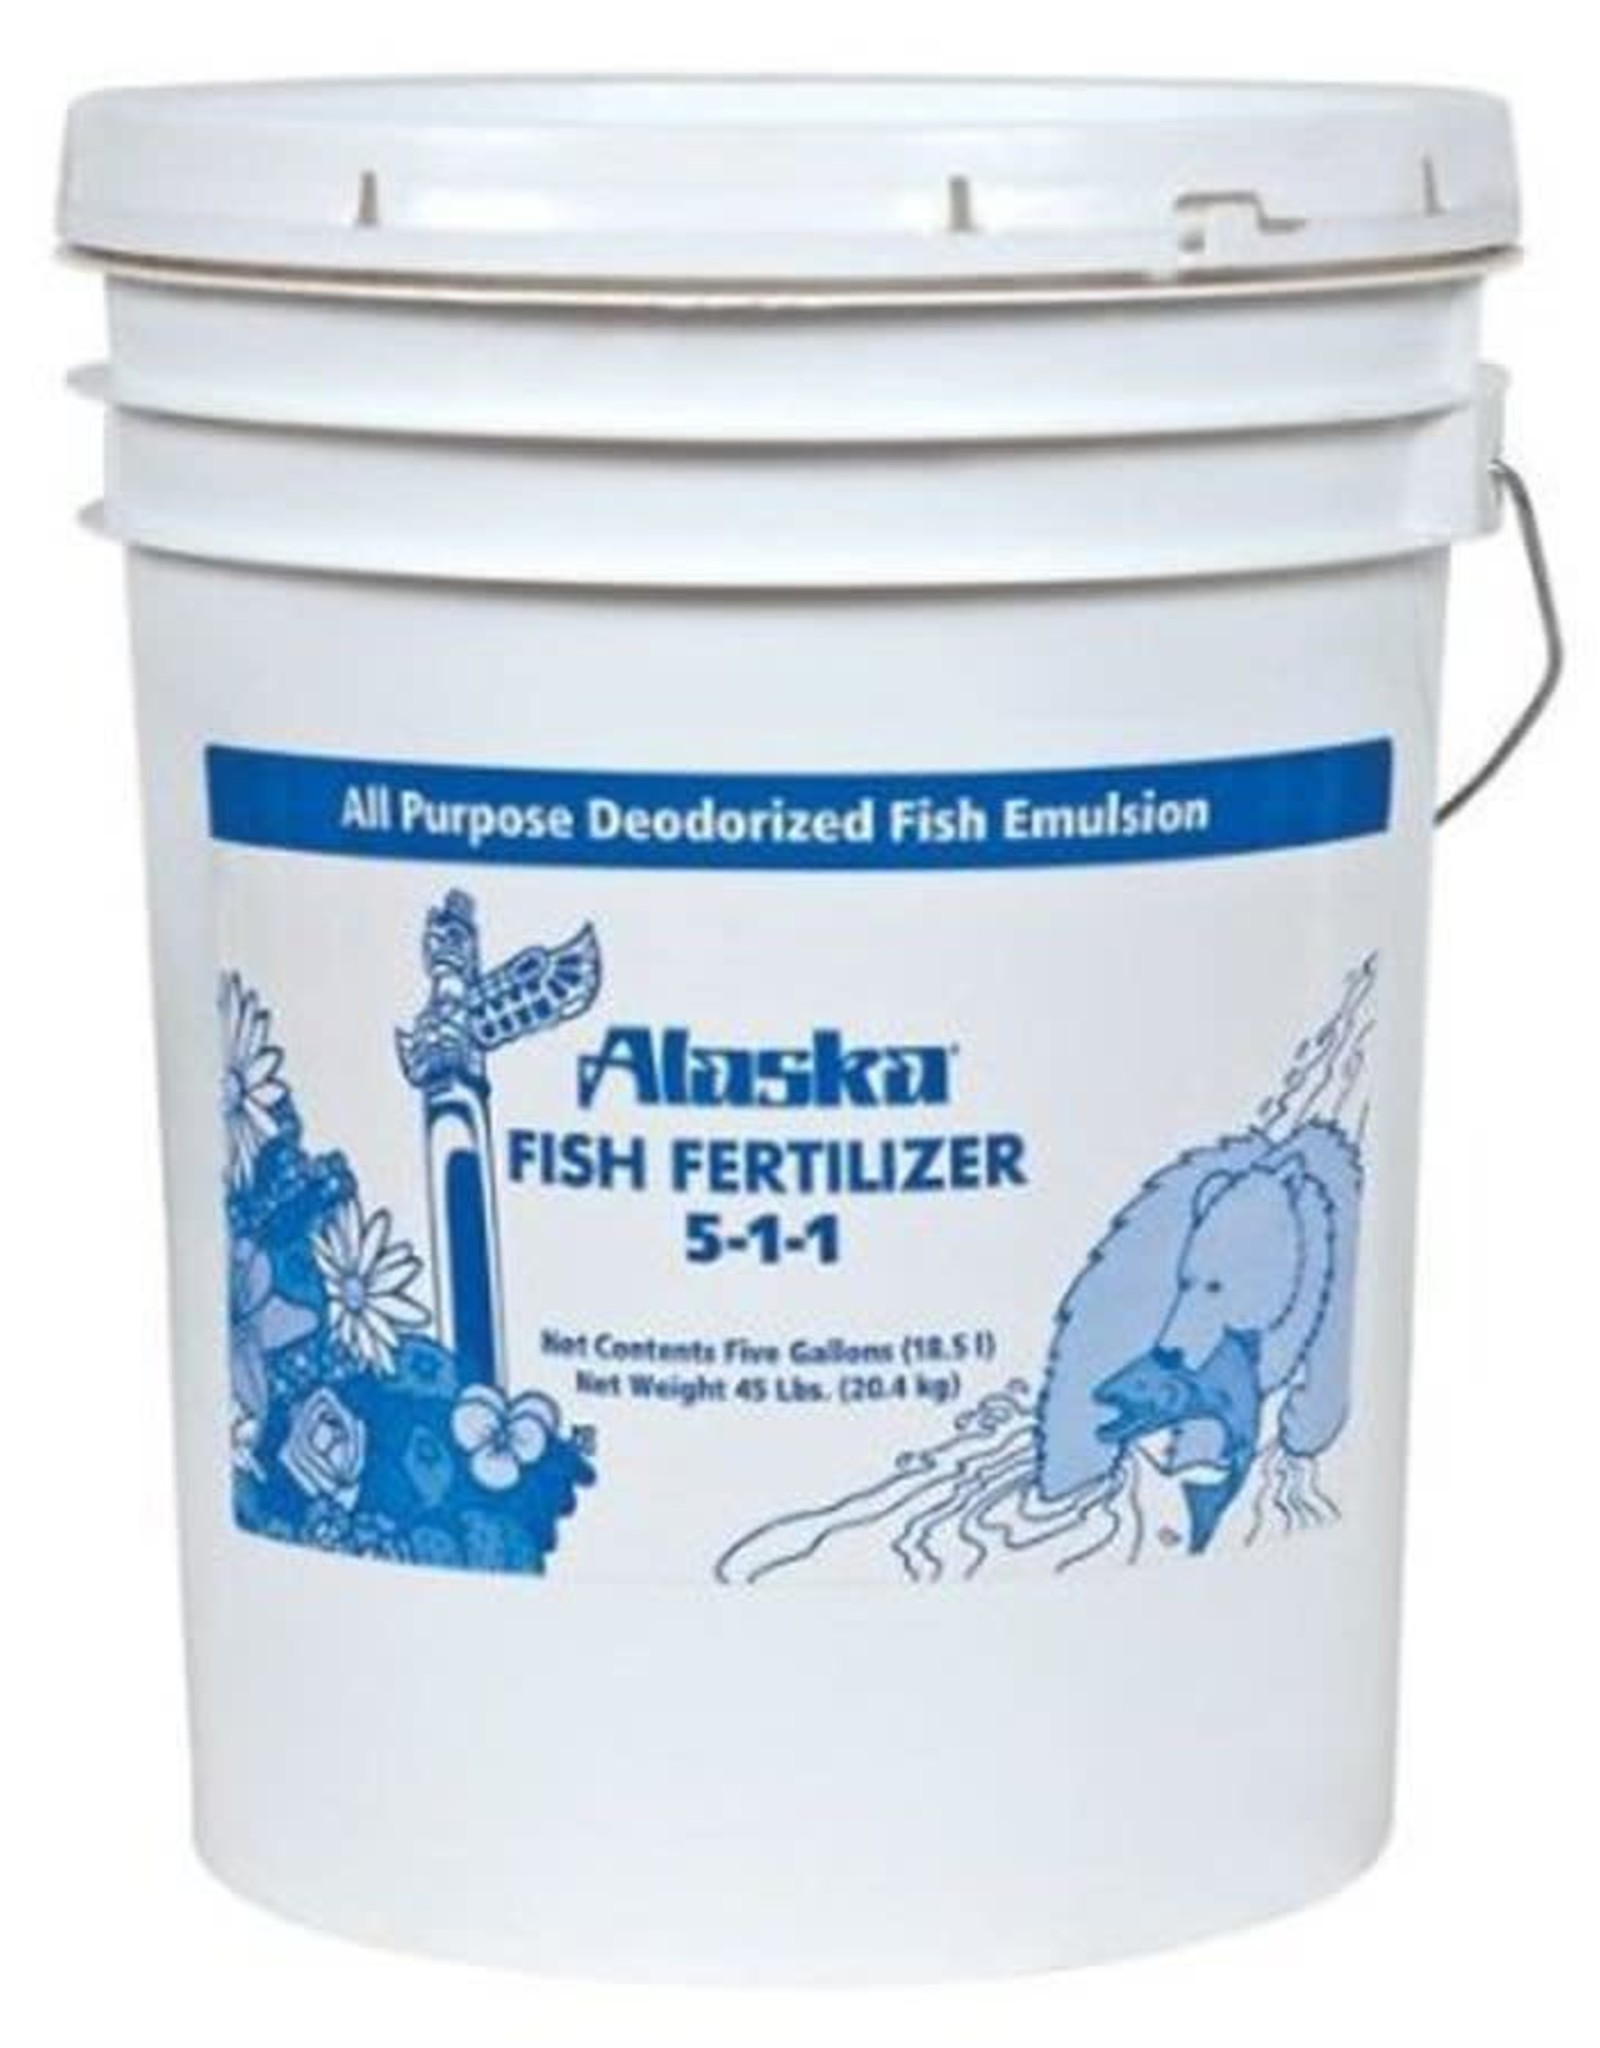 Central Garden & Pet Alaska Fish Fertilizer 5-1-1 5 gal